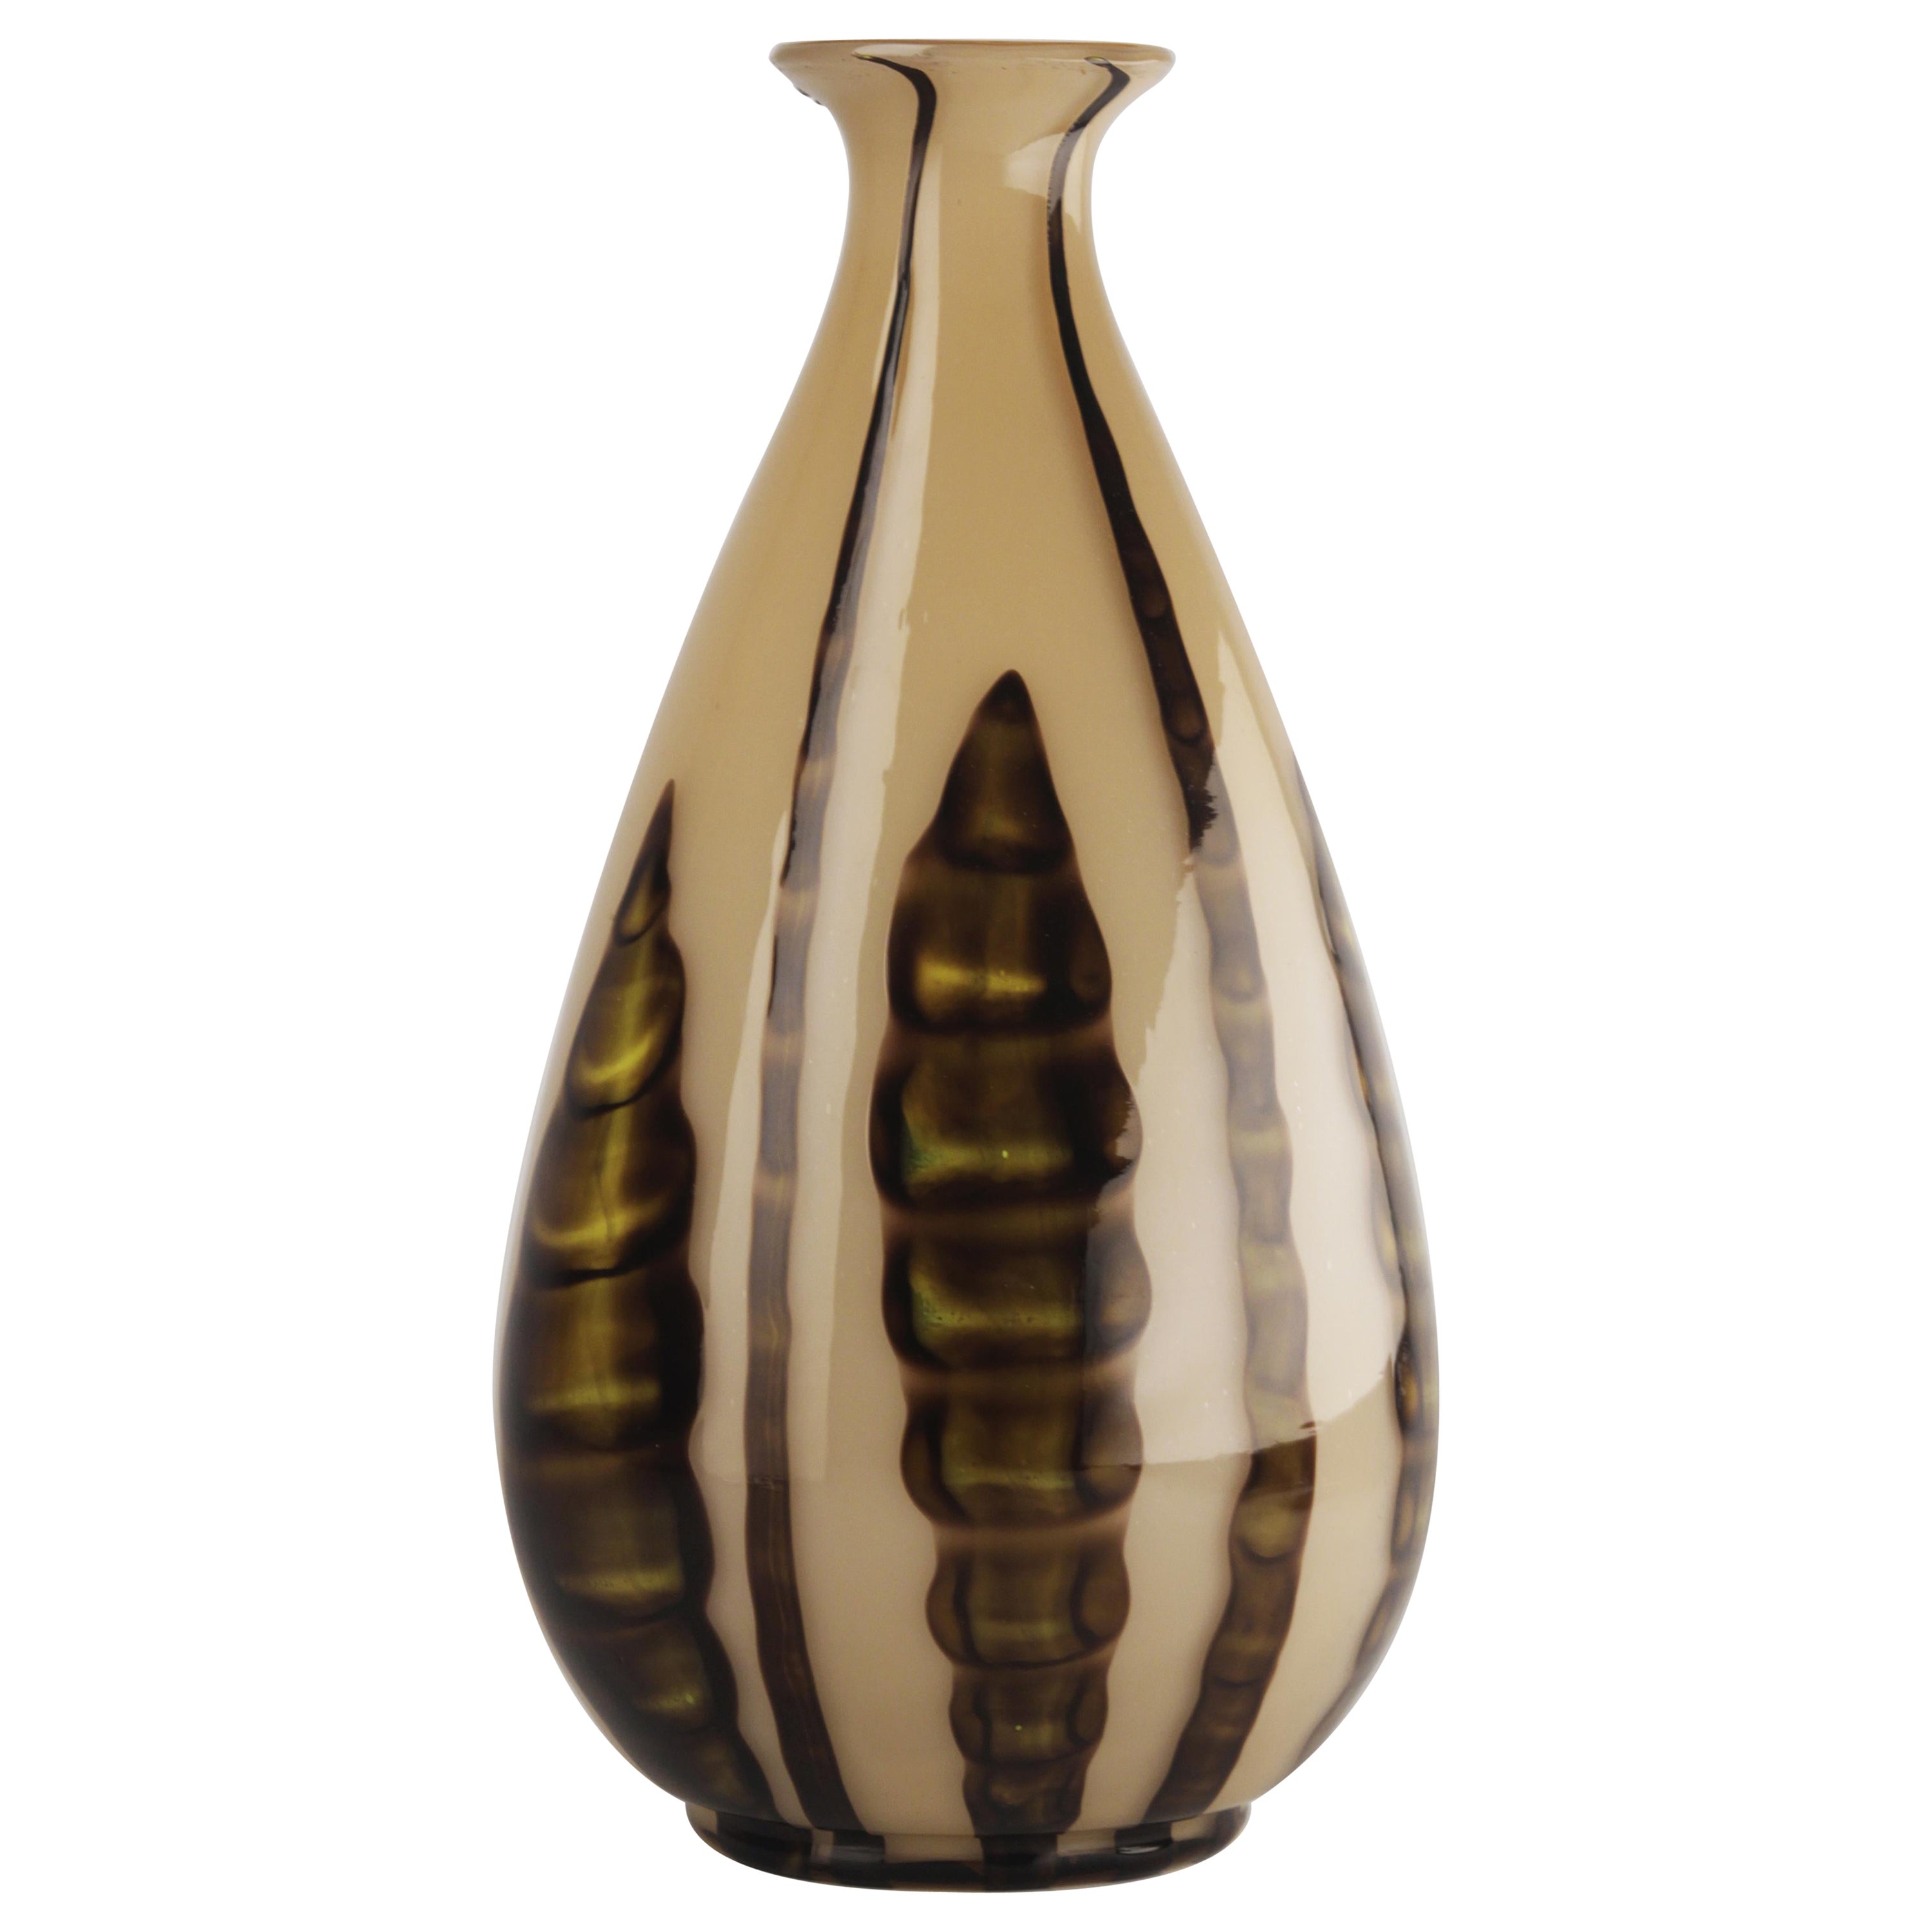 Early 20th C. Art Déco Czech Glazed Art Glass Bulbous Vase with Plant Motifs For Sale